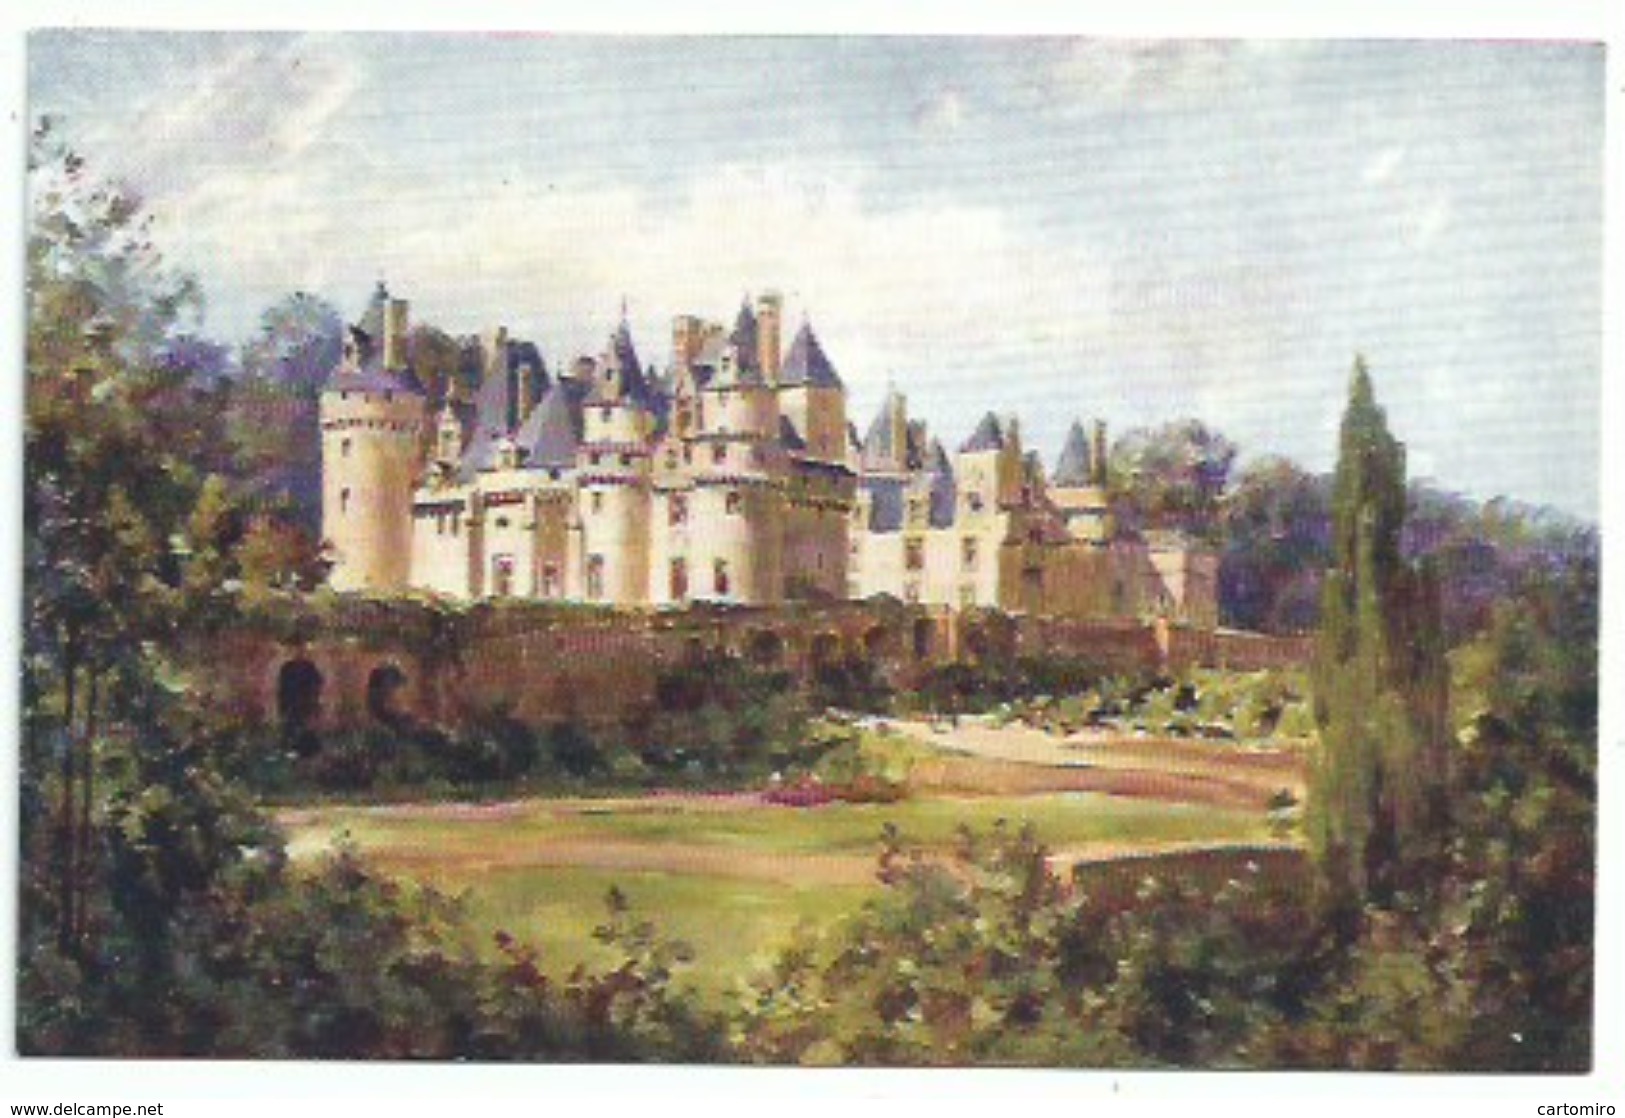 Illustrateur - Bourgeois -Ussé Château - Bourgeois